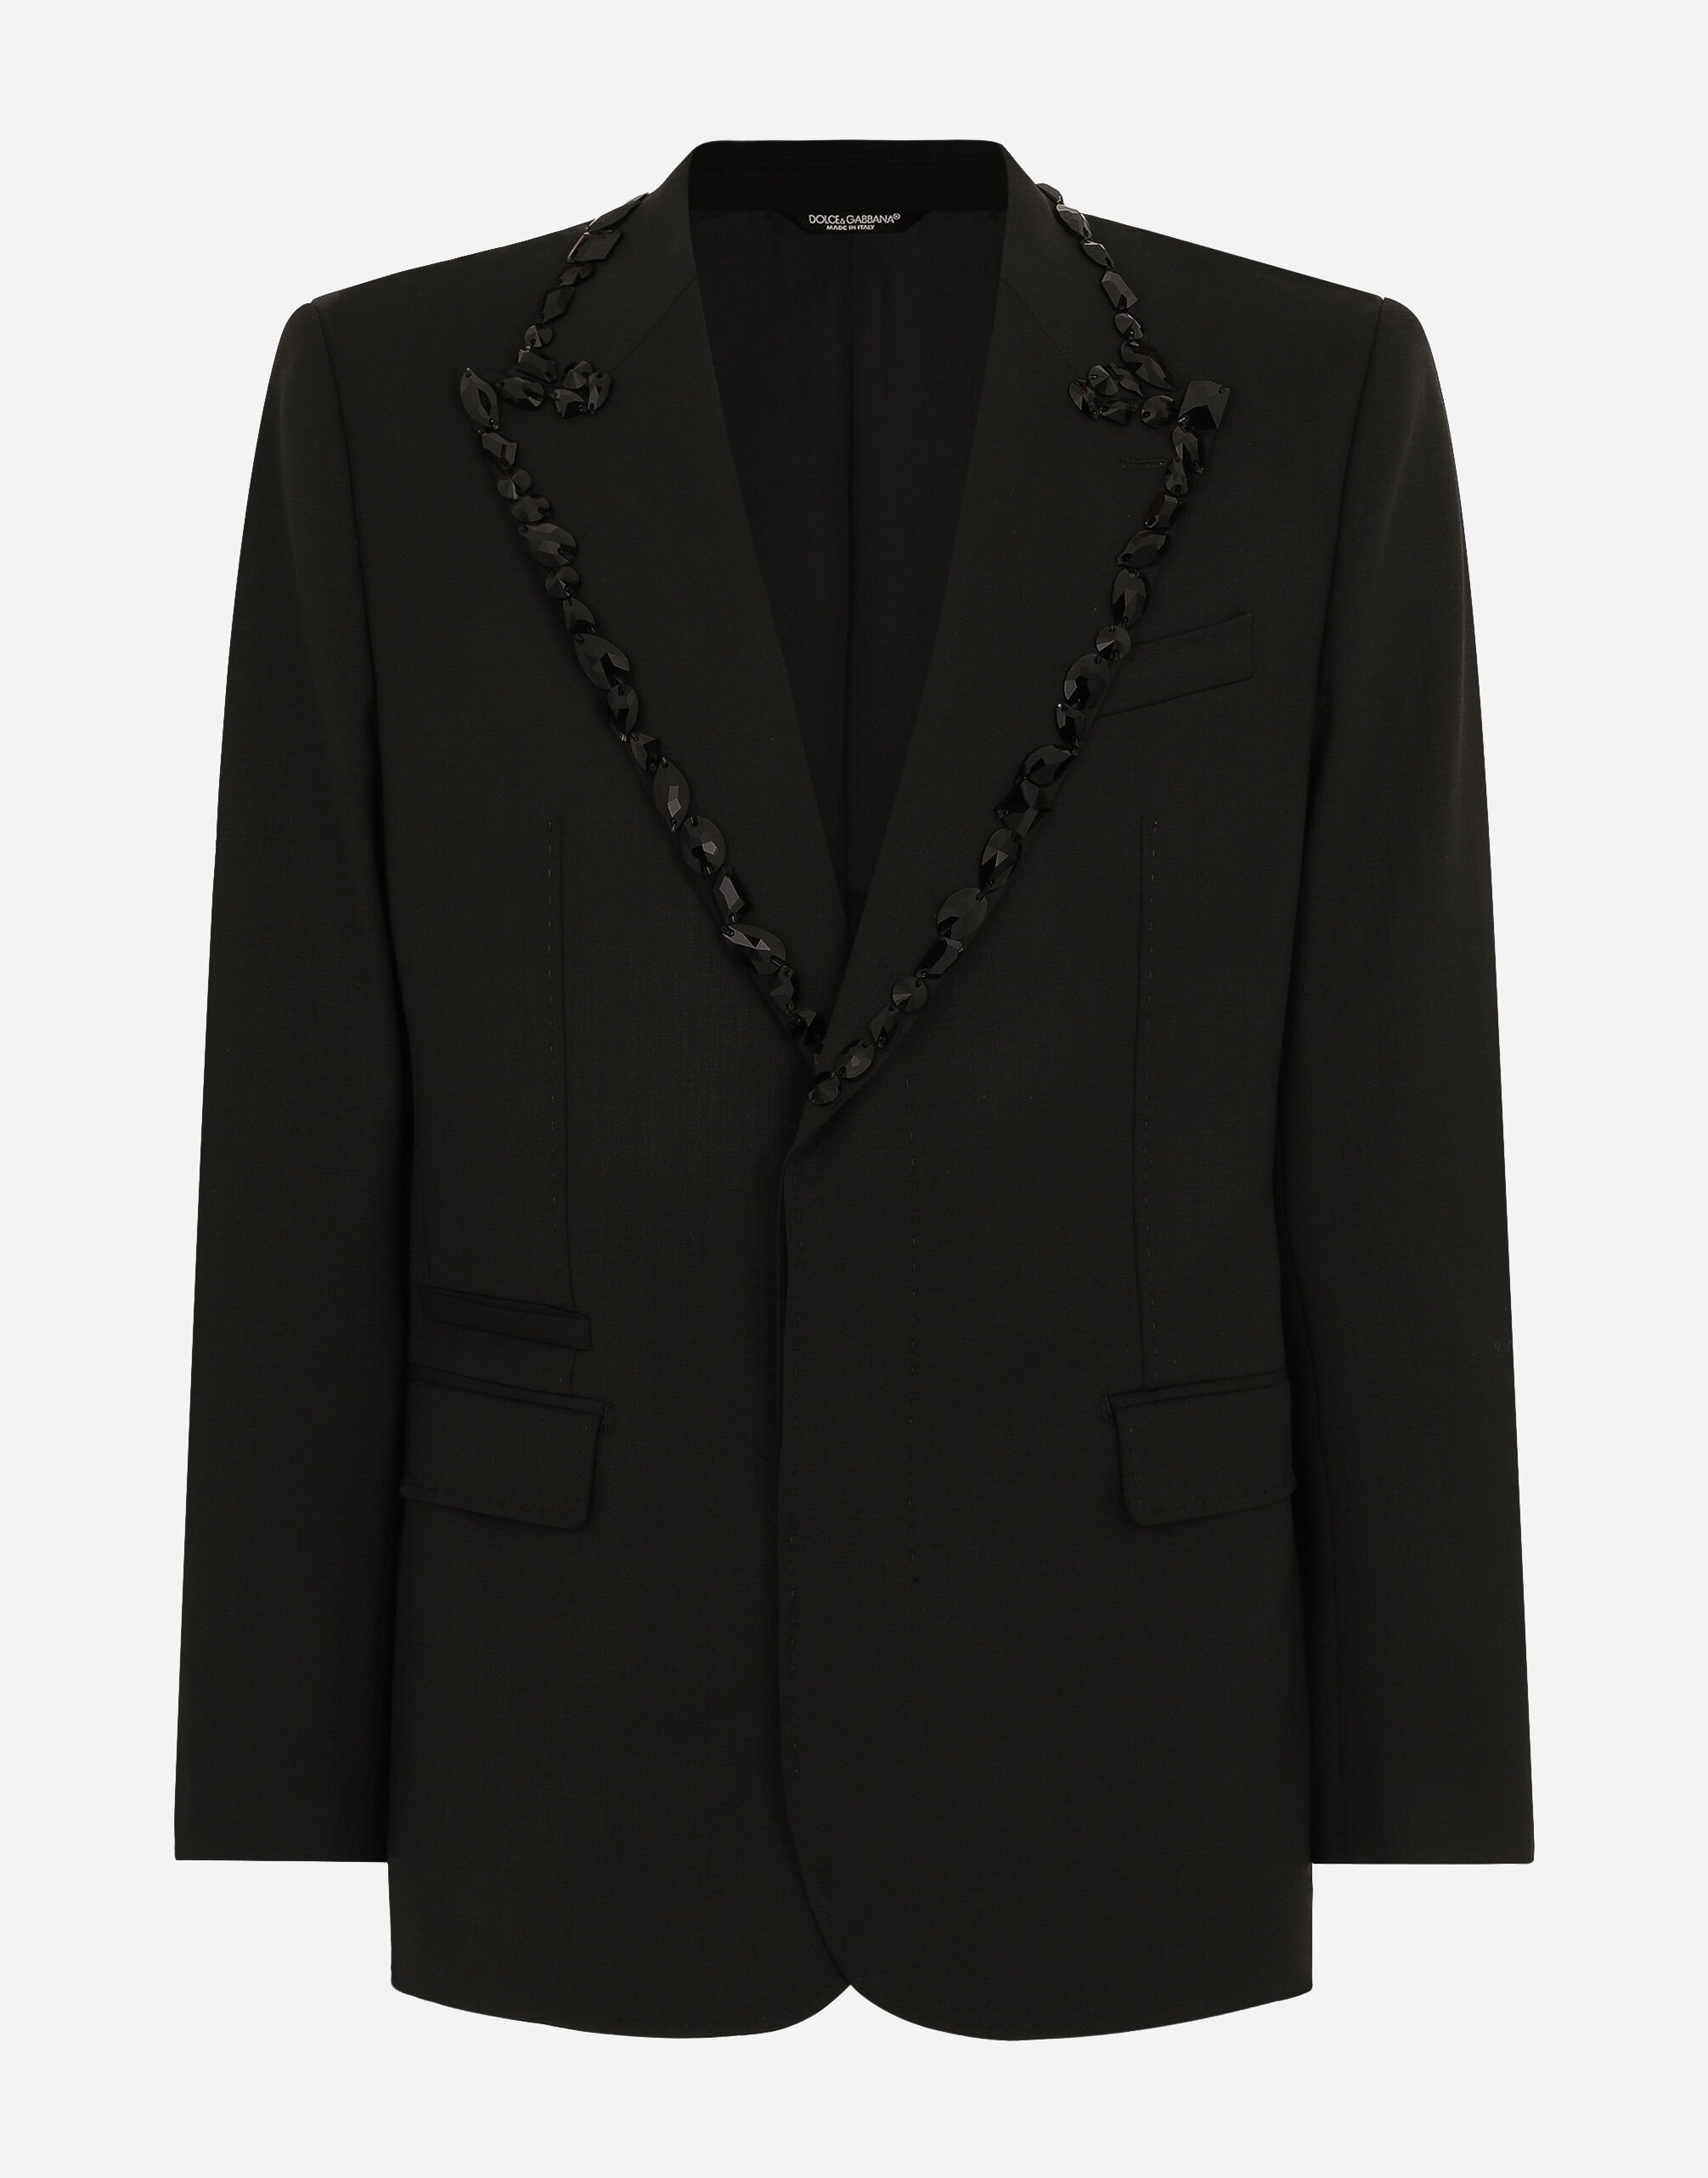 Sicilia single-breasted tuxedo jacket with rhinestones